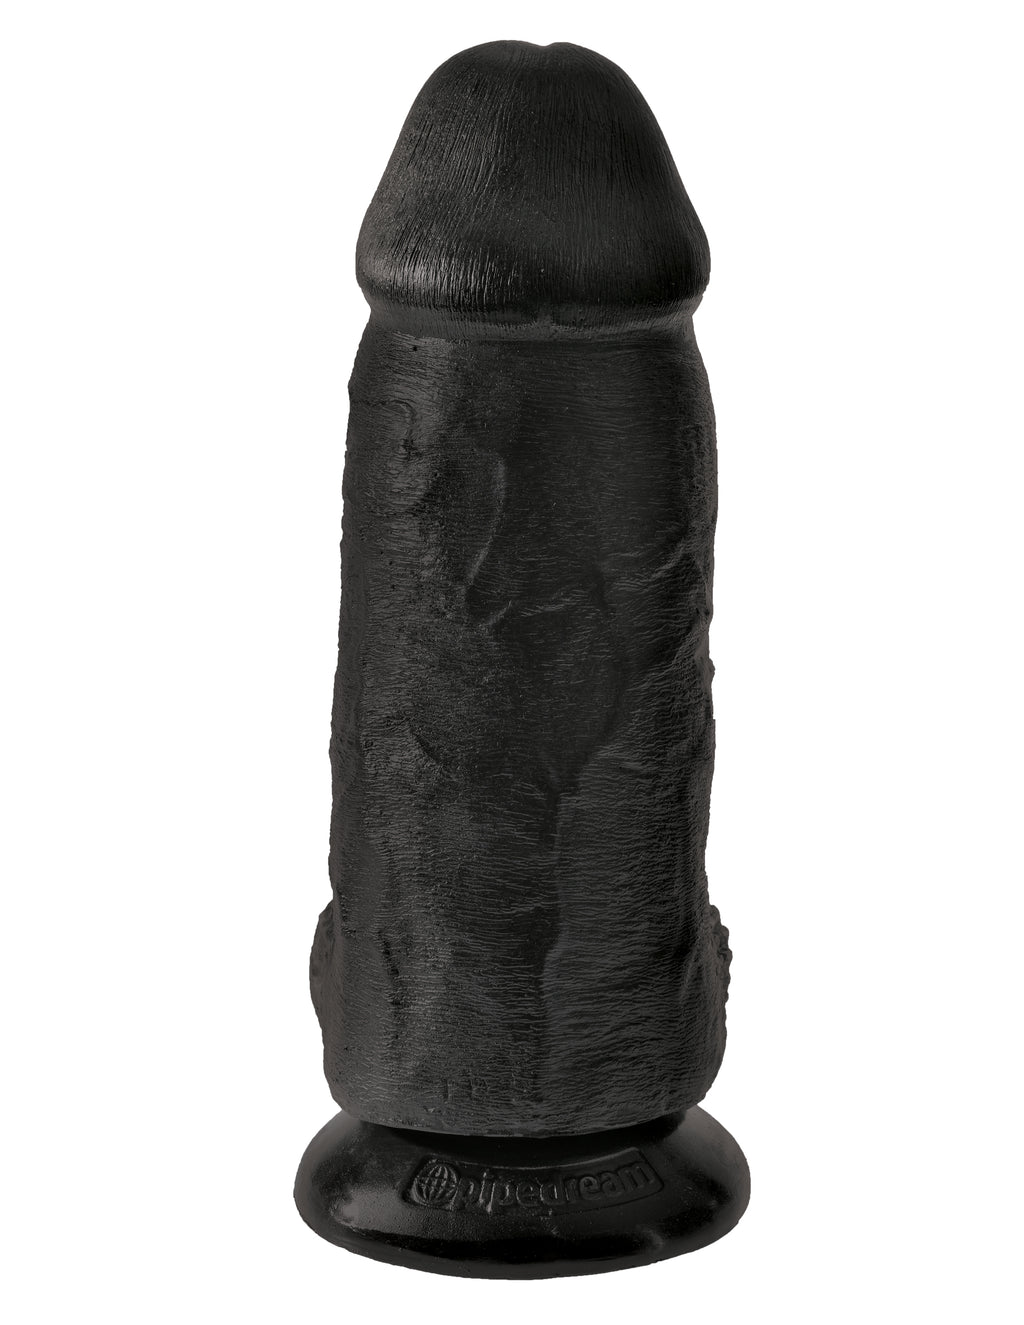 King Cock Chubby - Black PD5532-23